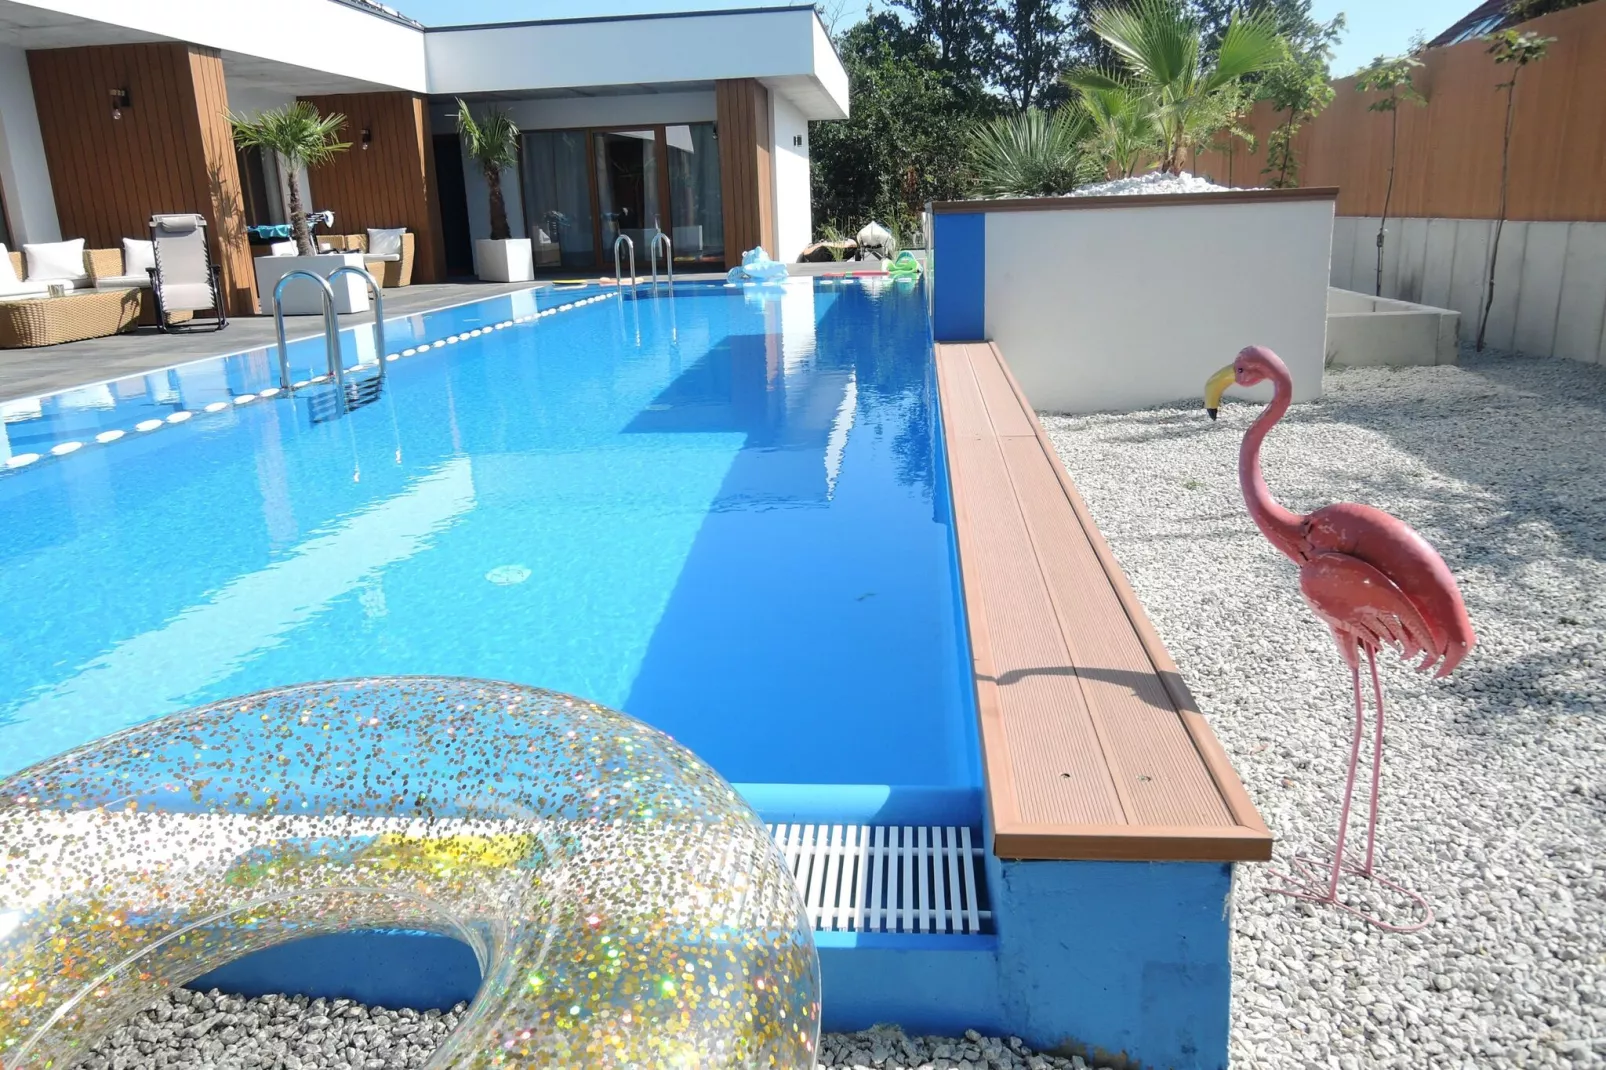 Dom z prywatym basenem i sauną  w Swinoujsciu dla 14 osób-Zwembad